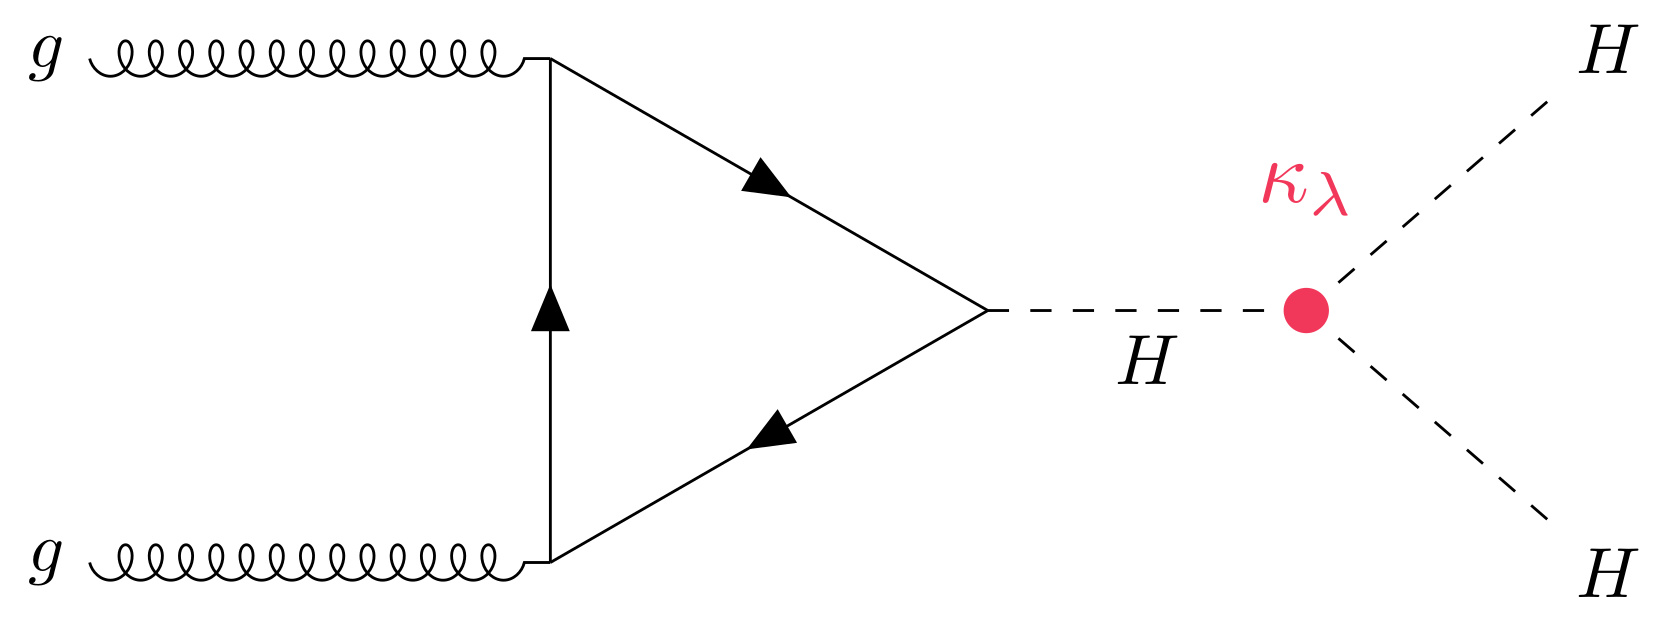 Diagrama de Feynman que muestra la producción de una pareja de Higgses a partir de la fusión de dos gluones y mediante la auto-interacción del campo de Higgs